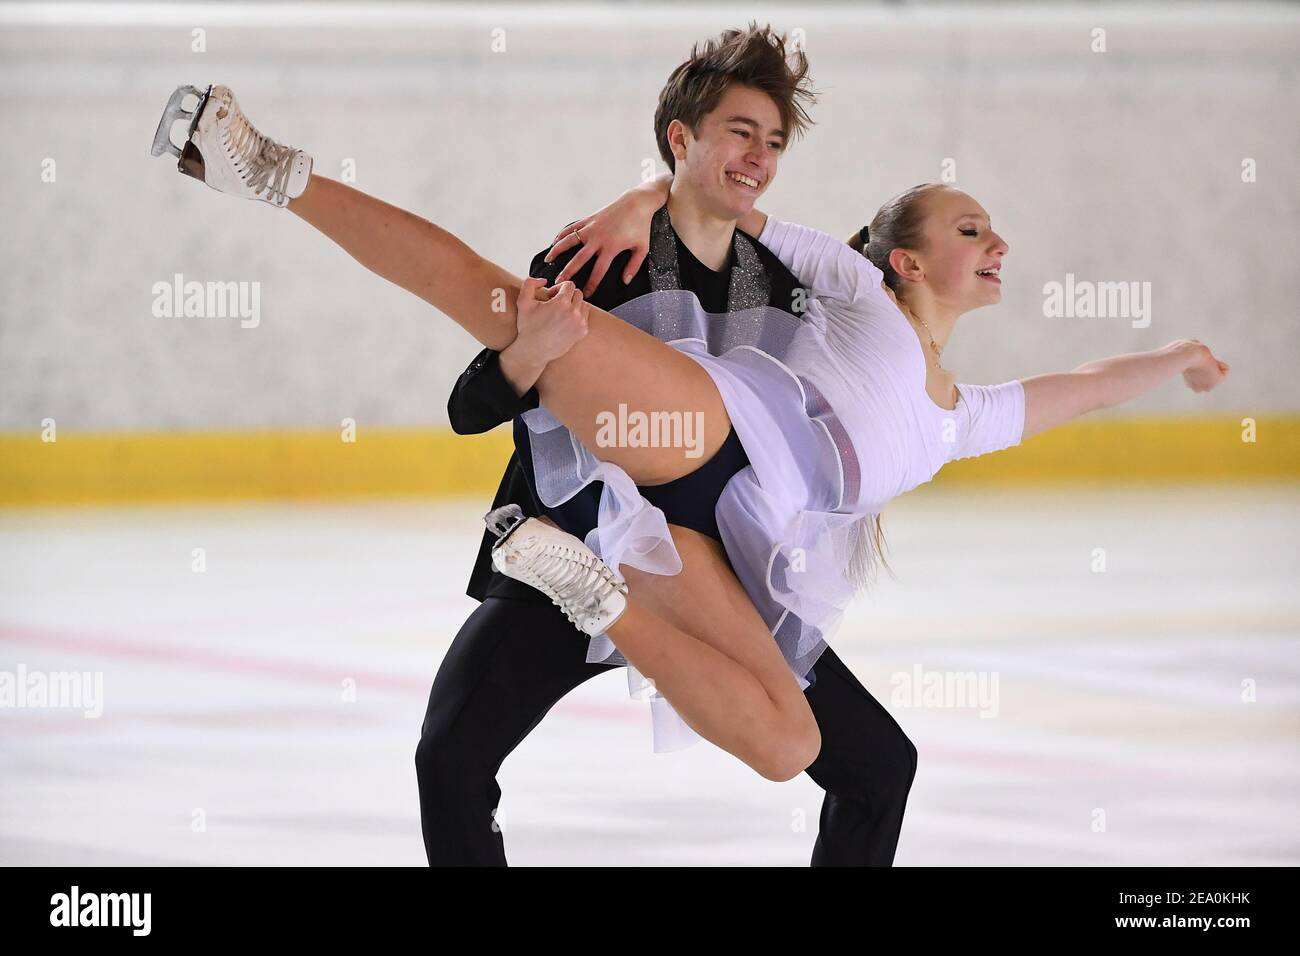 Katerina MRAZKOVA & Daniel MRAZEK aus Tschechien treten beim Junior Ice Dance Rhythm Dance bei der ISU Egna Dance Trophy 2021 in der Wurth Arena am 06. Februar 2021 in Egna/Neumarkt, Italien, an. Quelle: Raniero Corbelletti/AFLO/Alamy Live News Stockfoto